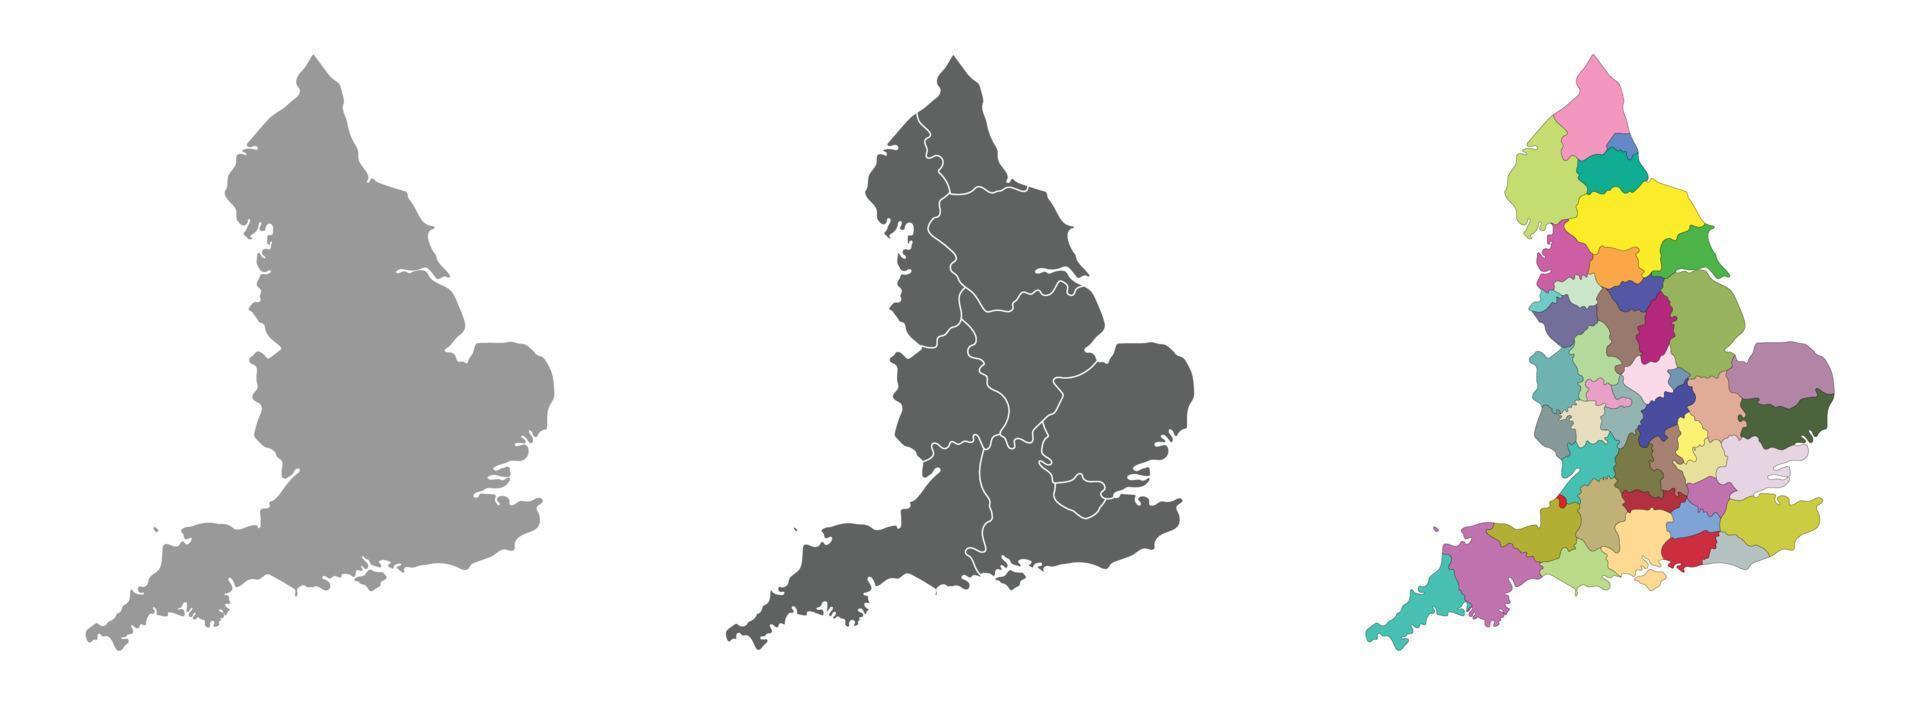 Inglaterra mapa conjunto de gris y multicolor administraciones regiones mapa vector